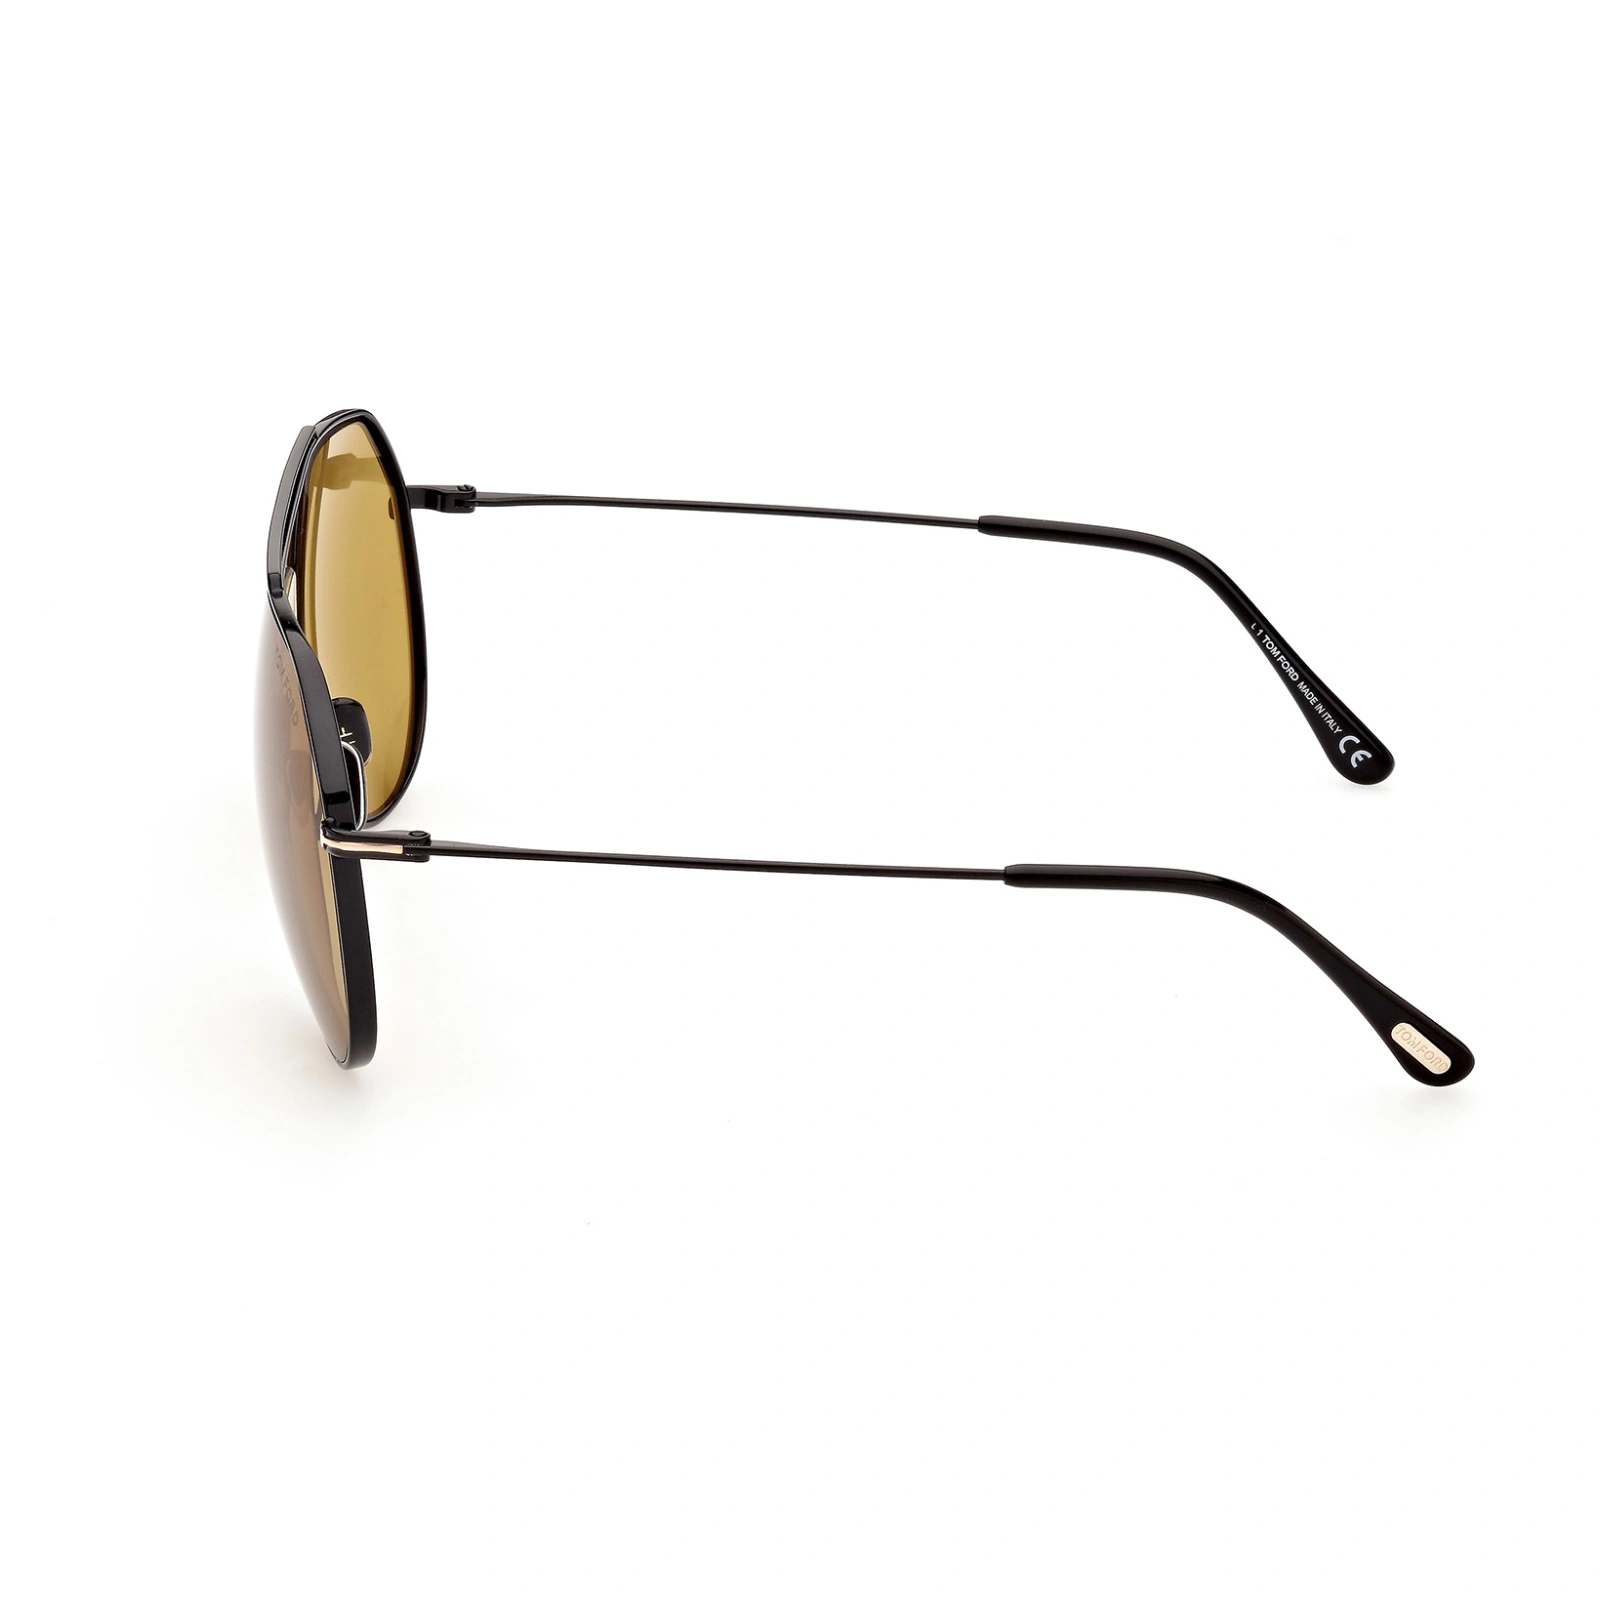 Tom Ford Sunglasses Tom Ford Sunglasses FT0926 01E 61mm Clyde Eyeglasses Eyewear UK USA Australia 